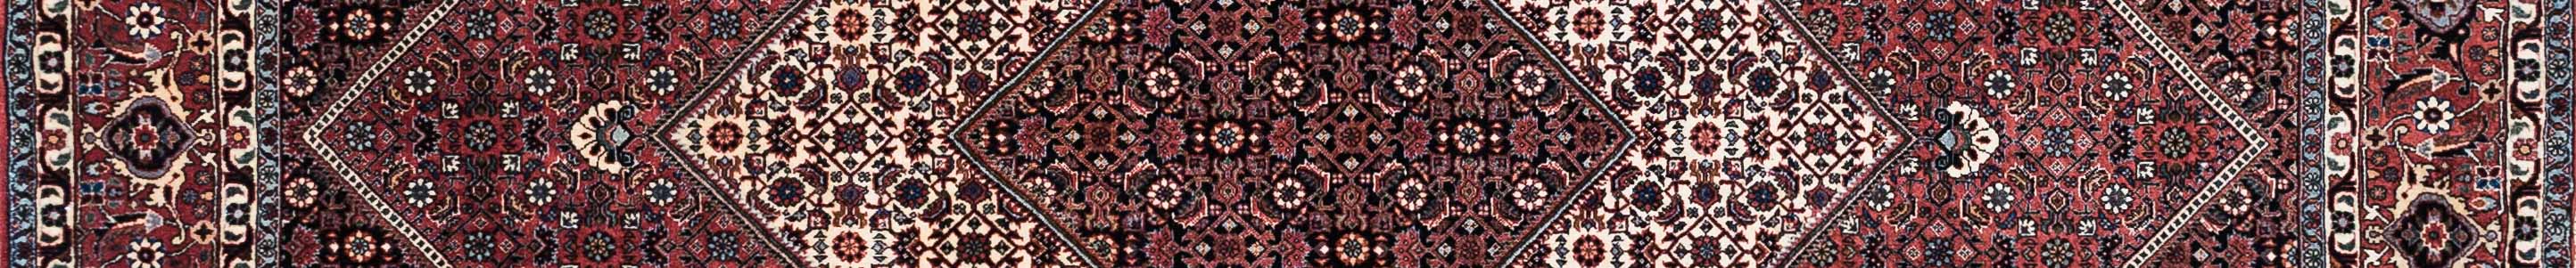 Bidjar Persian Carpet Rug N1Carpet Canada Montreal Tapis Persan 3600